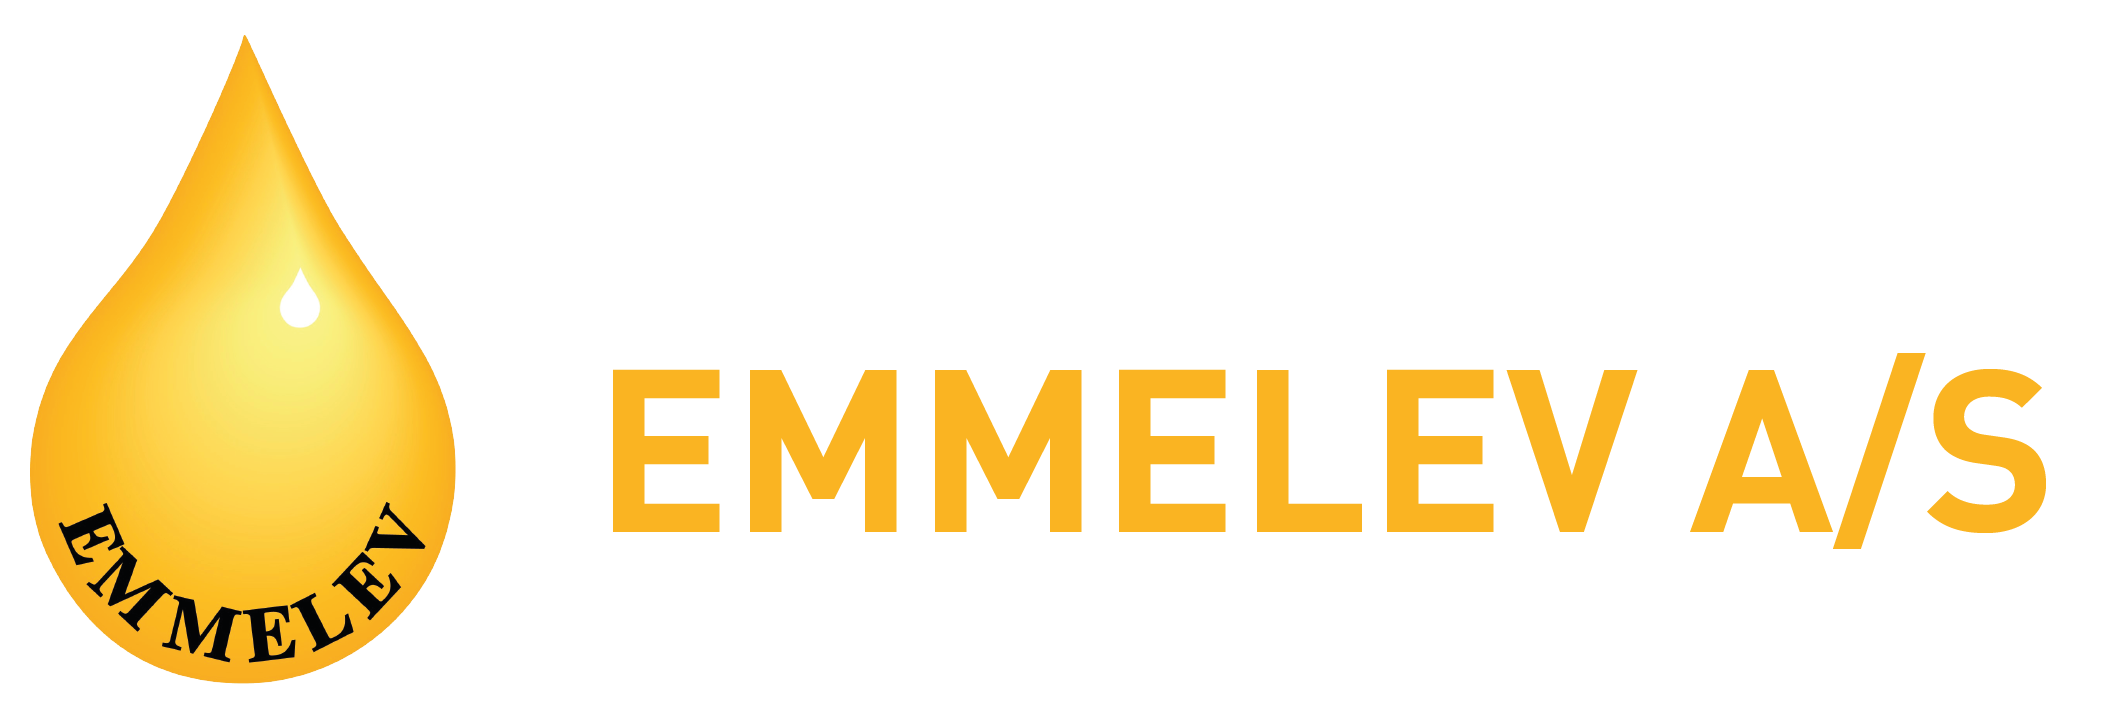 App Logo Emelev 16